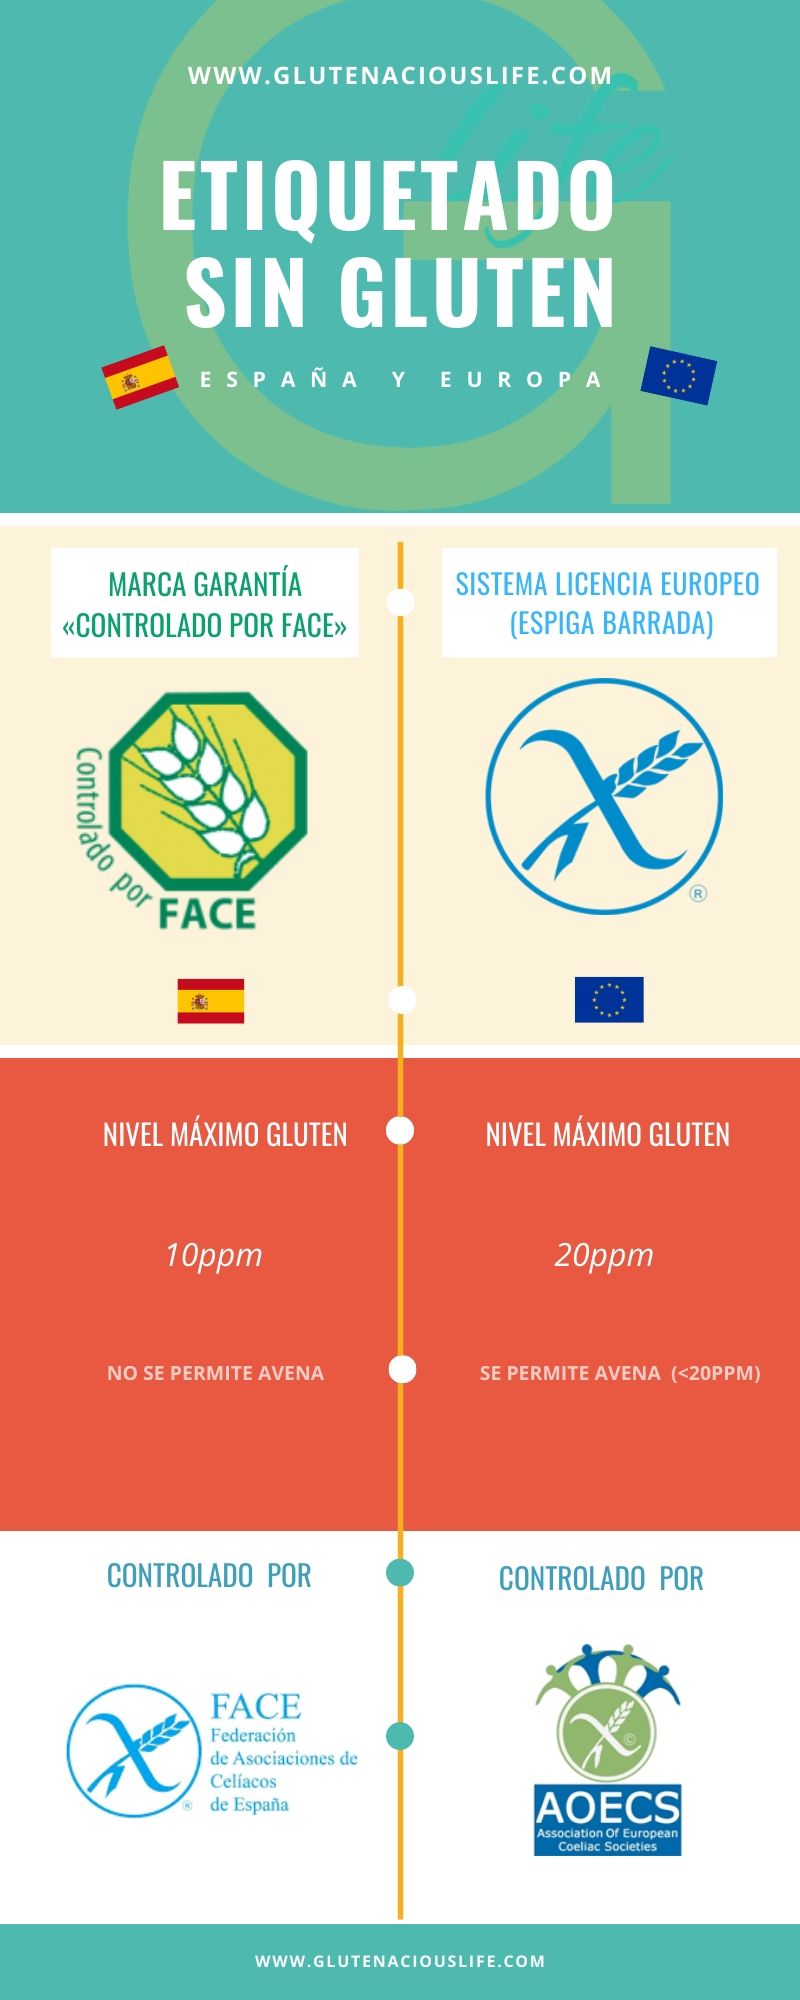 Comparativa Etiquetado Sin Gluten: Marca de Garantía «Controlado por FACE» (de uso en España) y Espiga Barrada o Sistema de Licencia Europeo (de uso en Europa) | Glutenacious Life